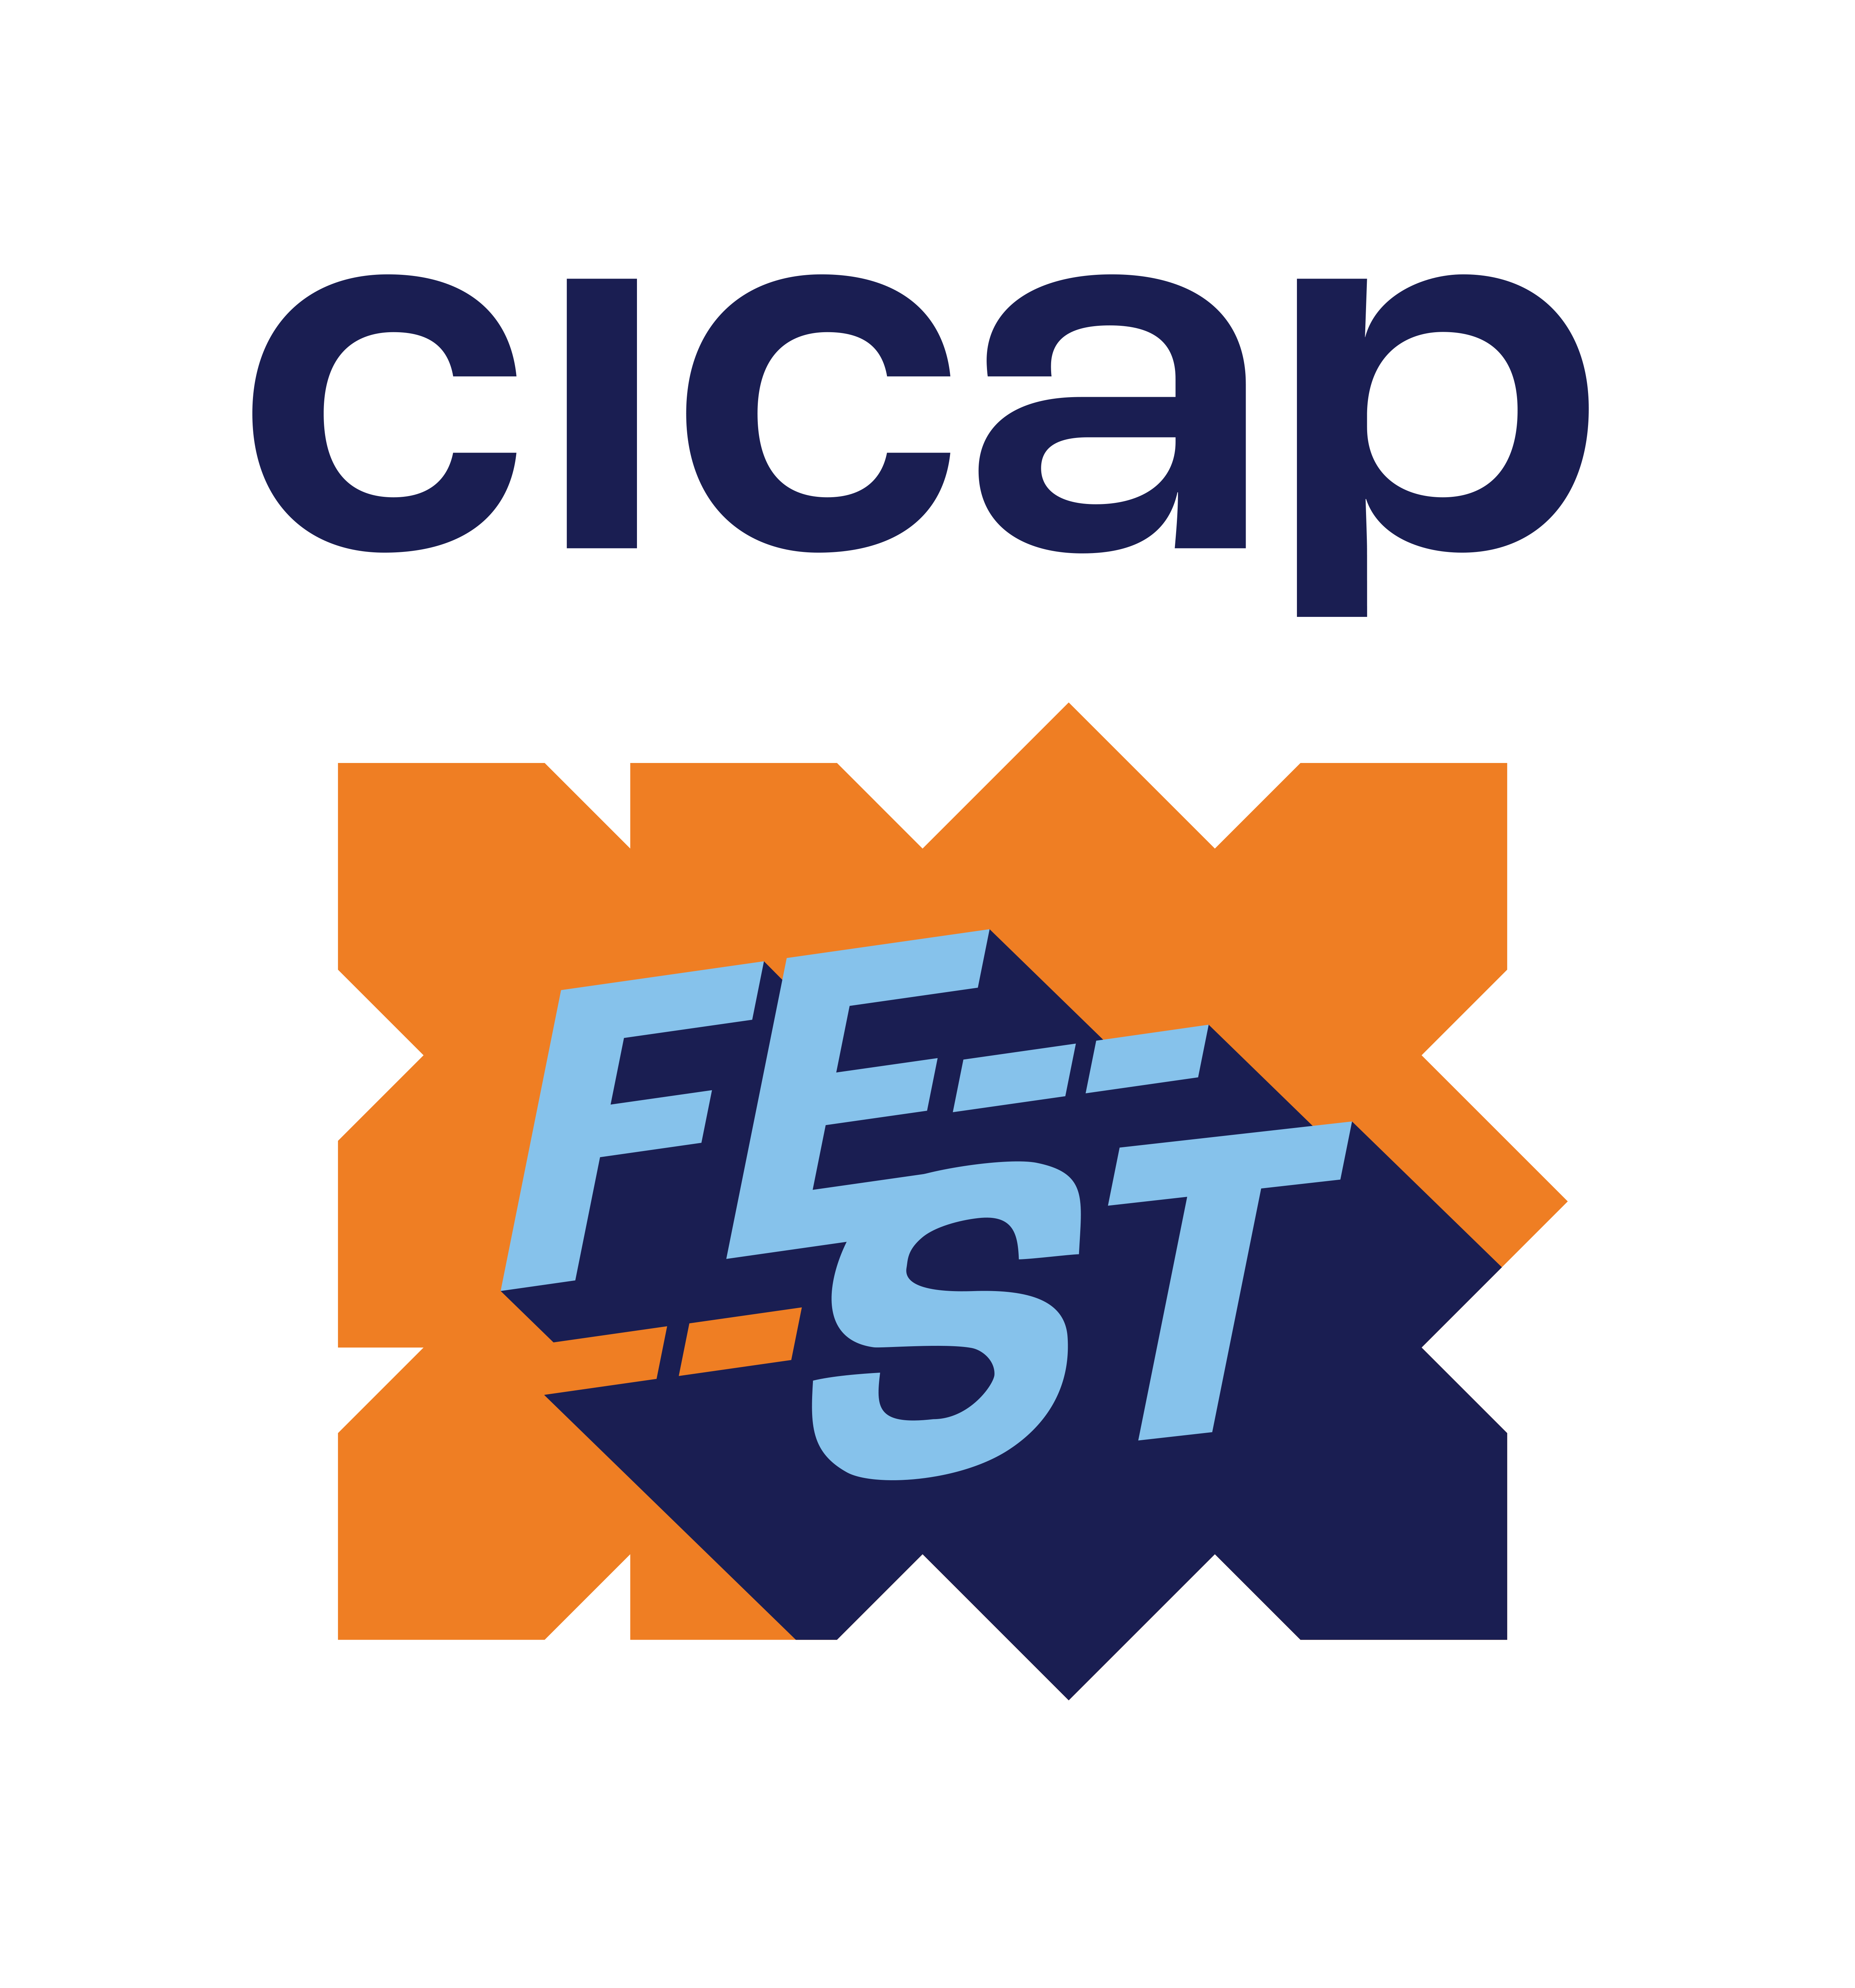 CICAP Fest